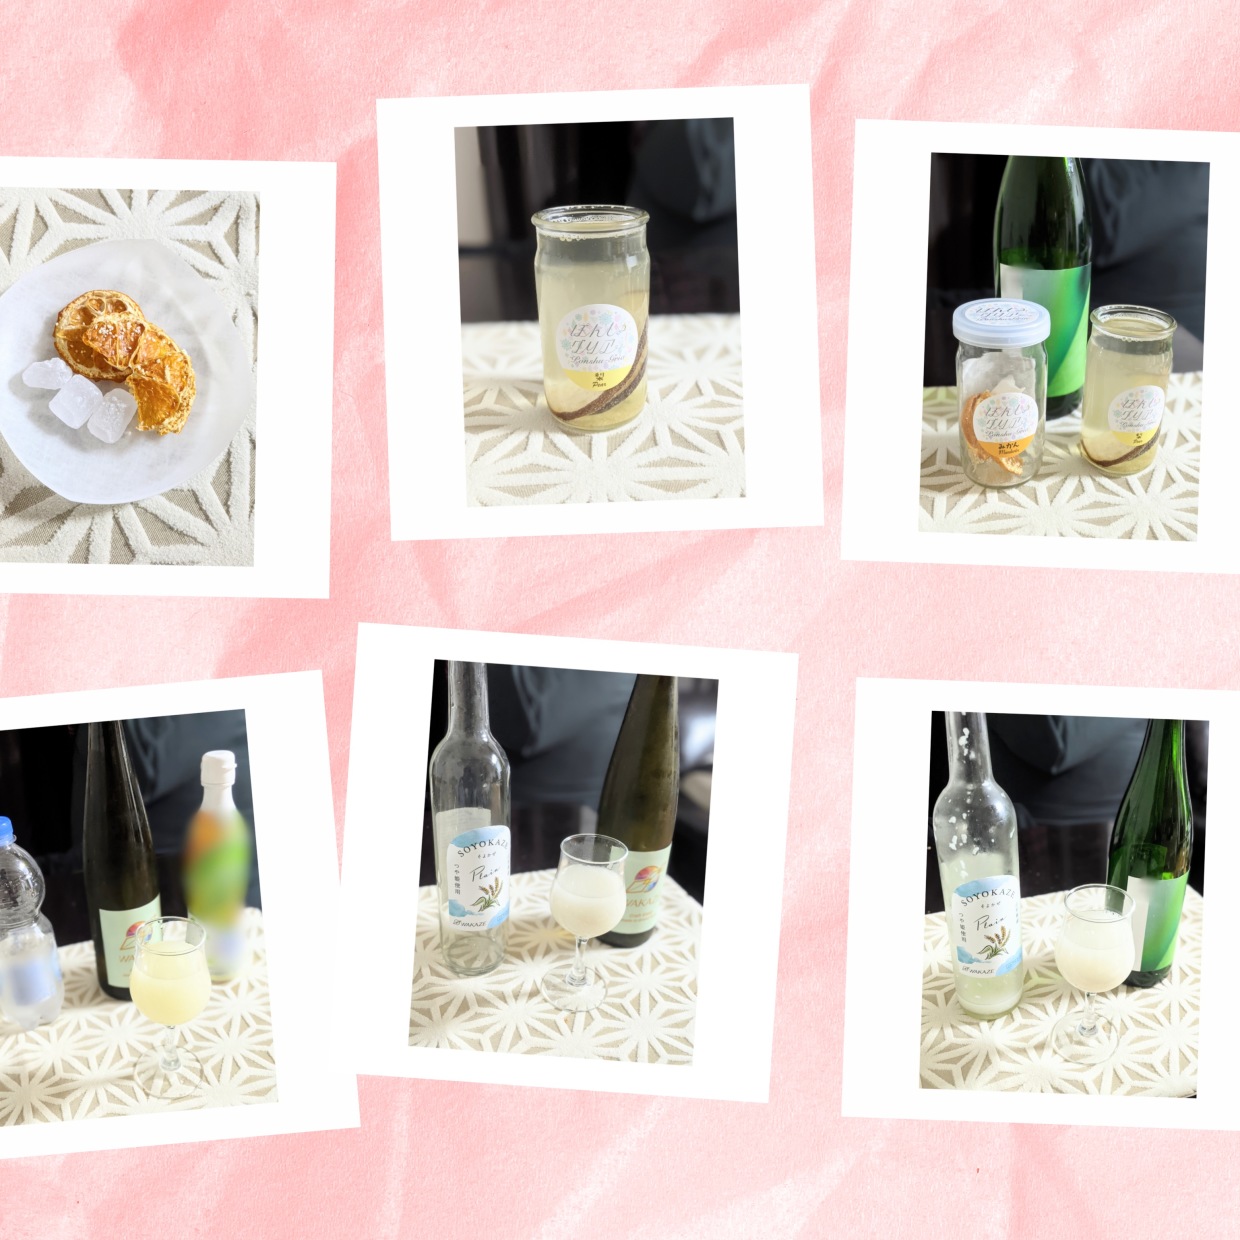  【お正月に余った日本酒を味変】日本酒唎酒師がおすすめする簡単で飲みやすい味変レシピ3選 